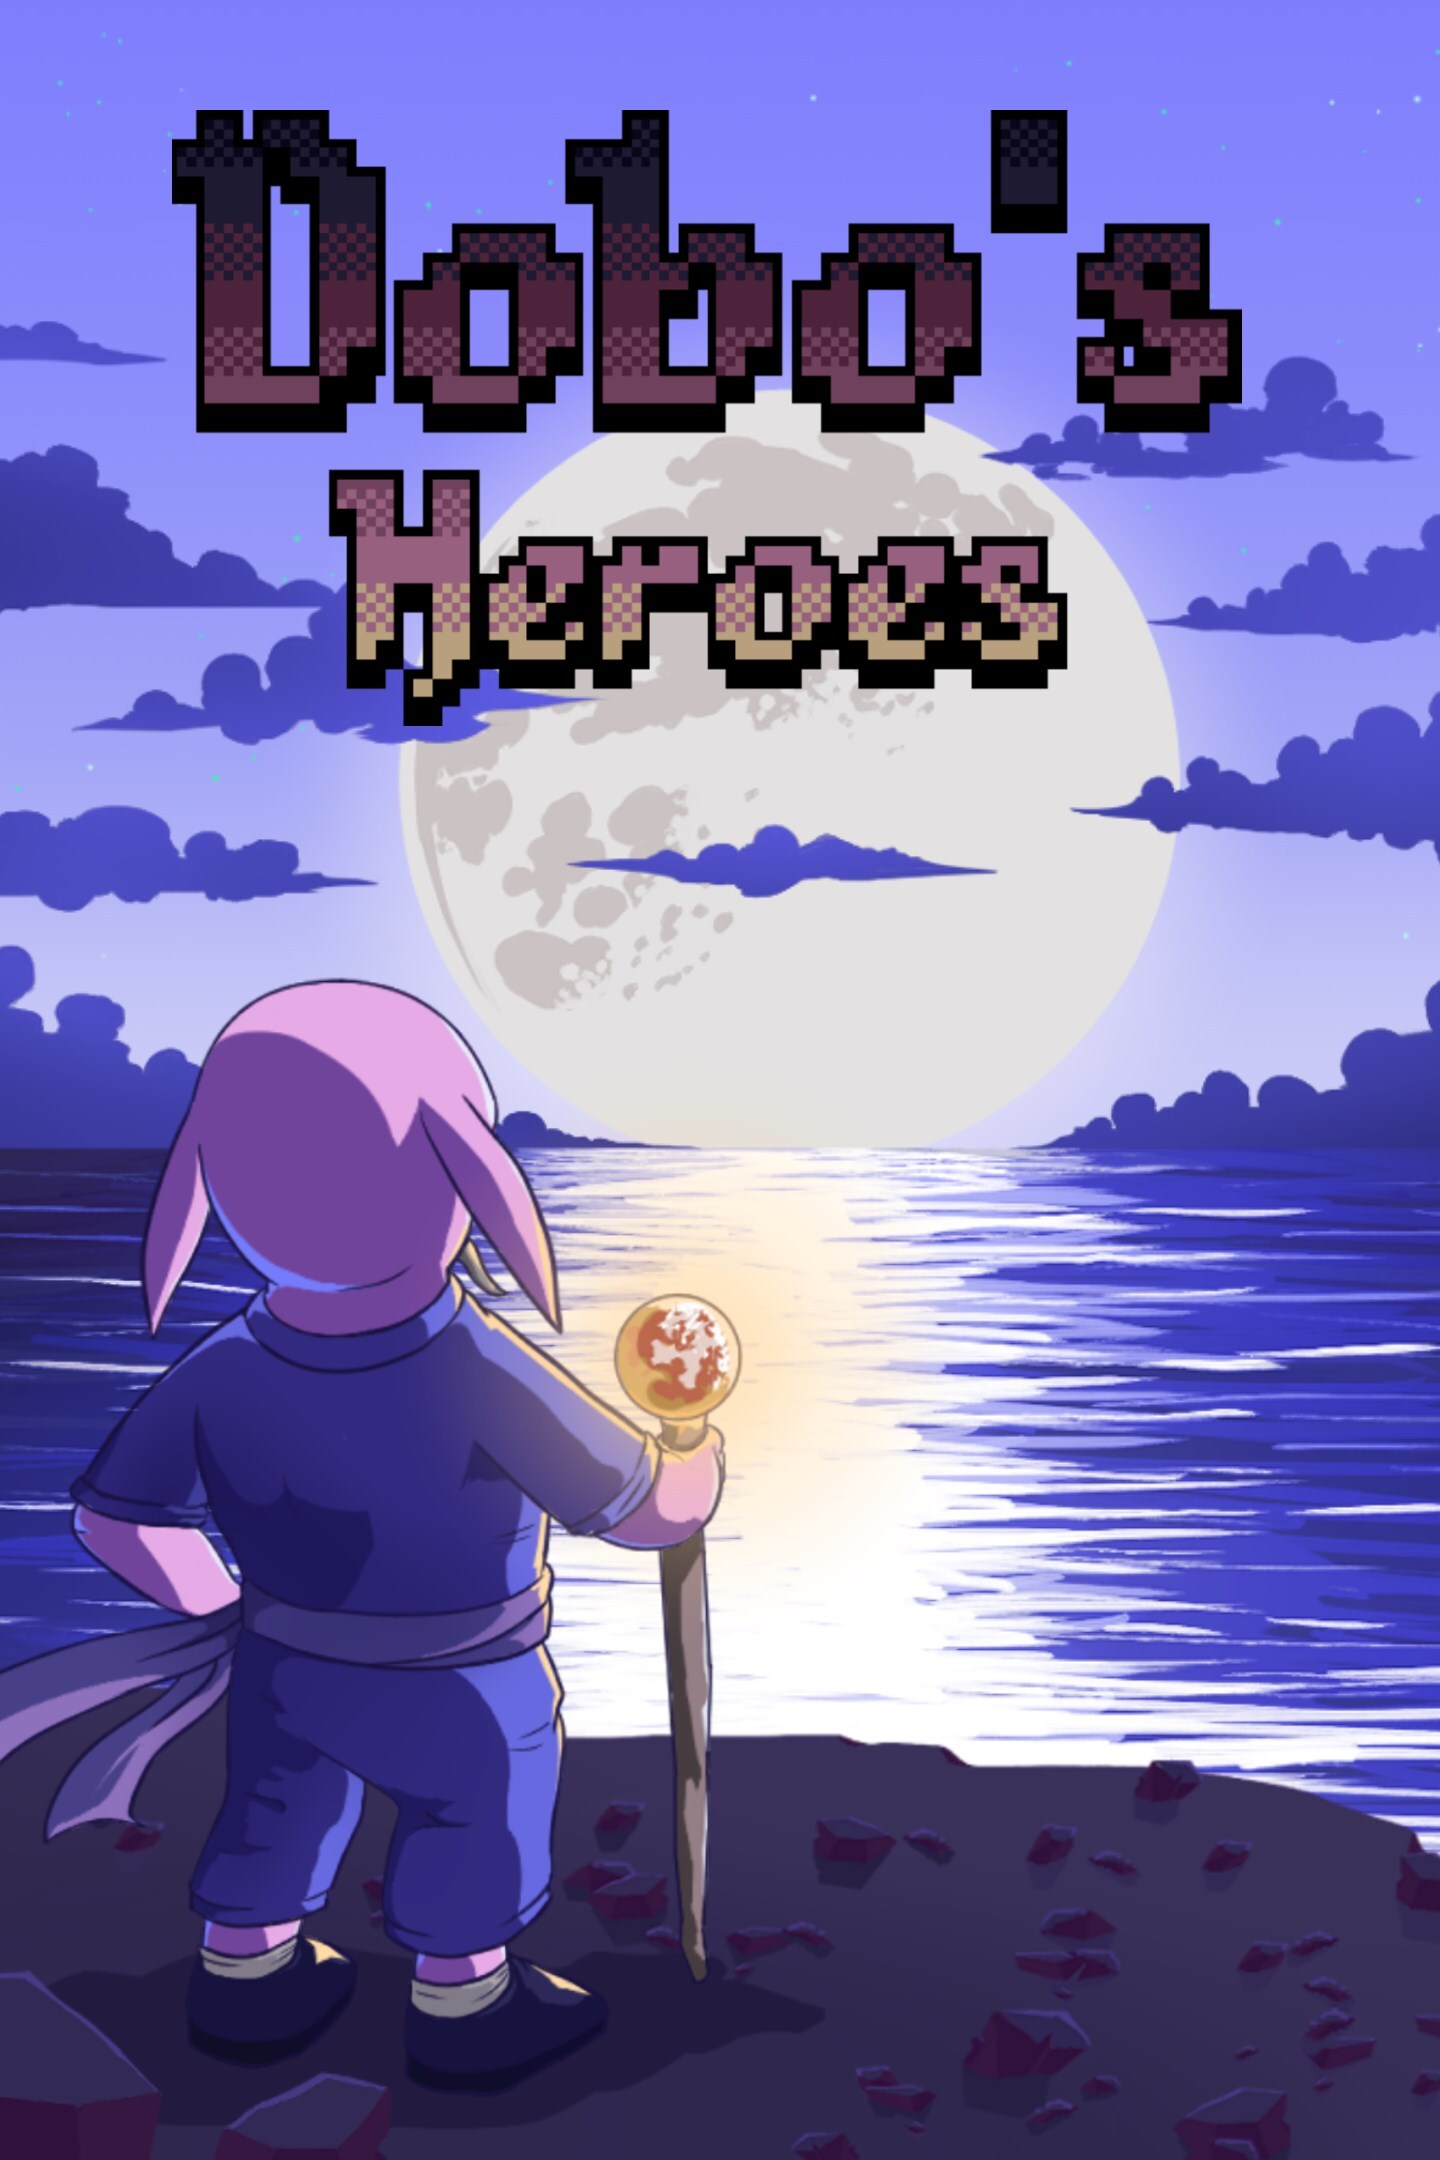 Dobo's Heroes